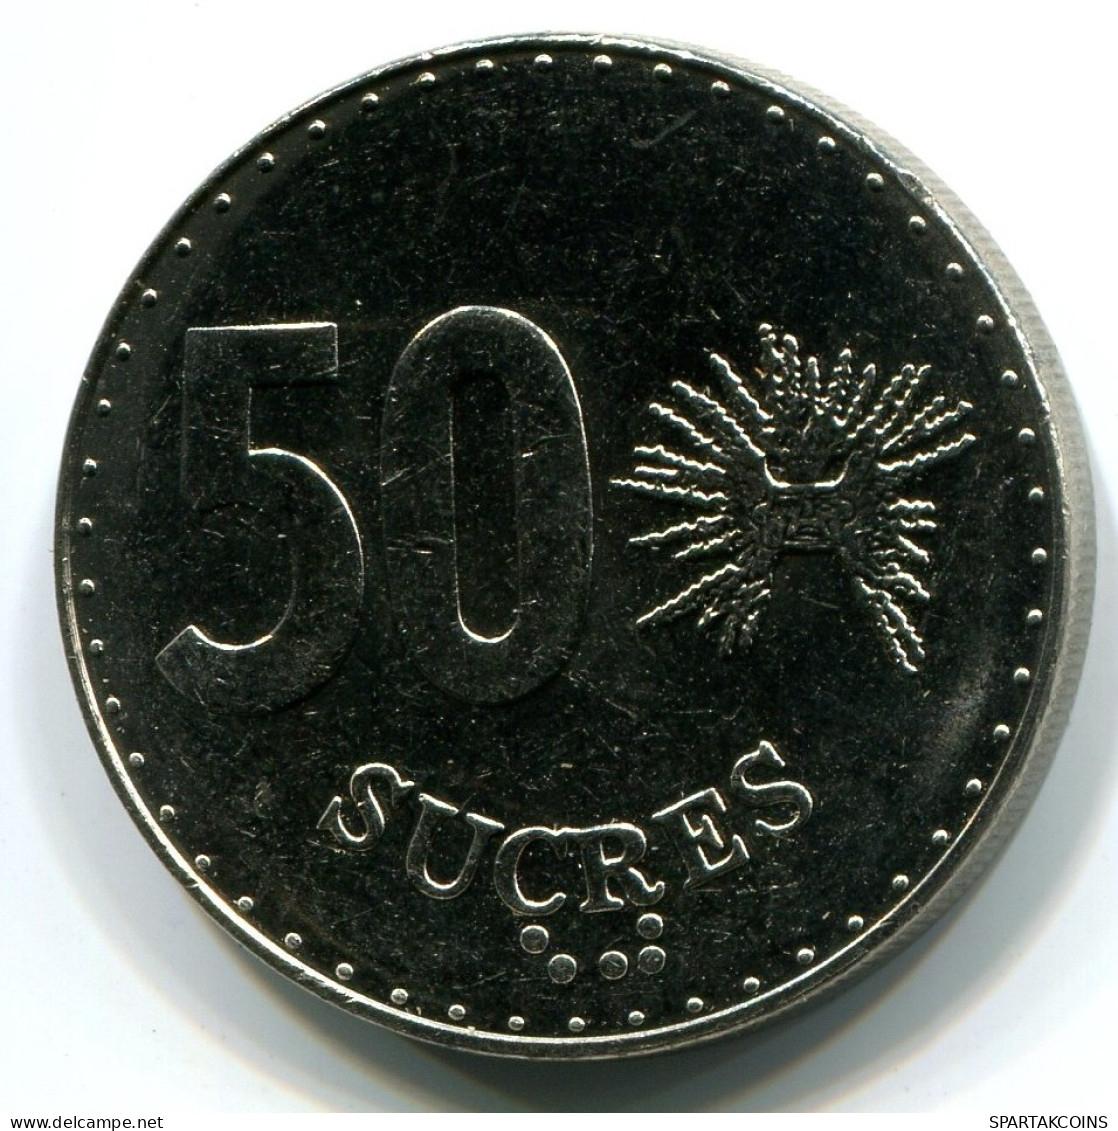 50 SUCRE 1991 ECUADOR UNC Moneda #W11014.E.A - Ecuador